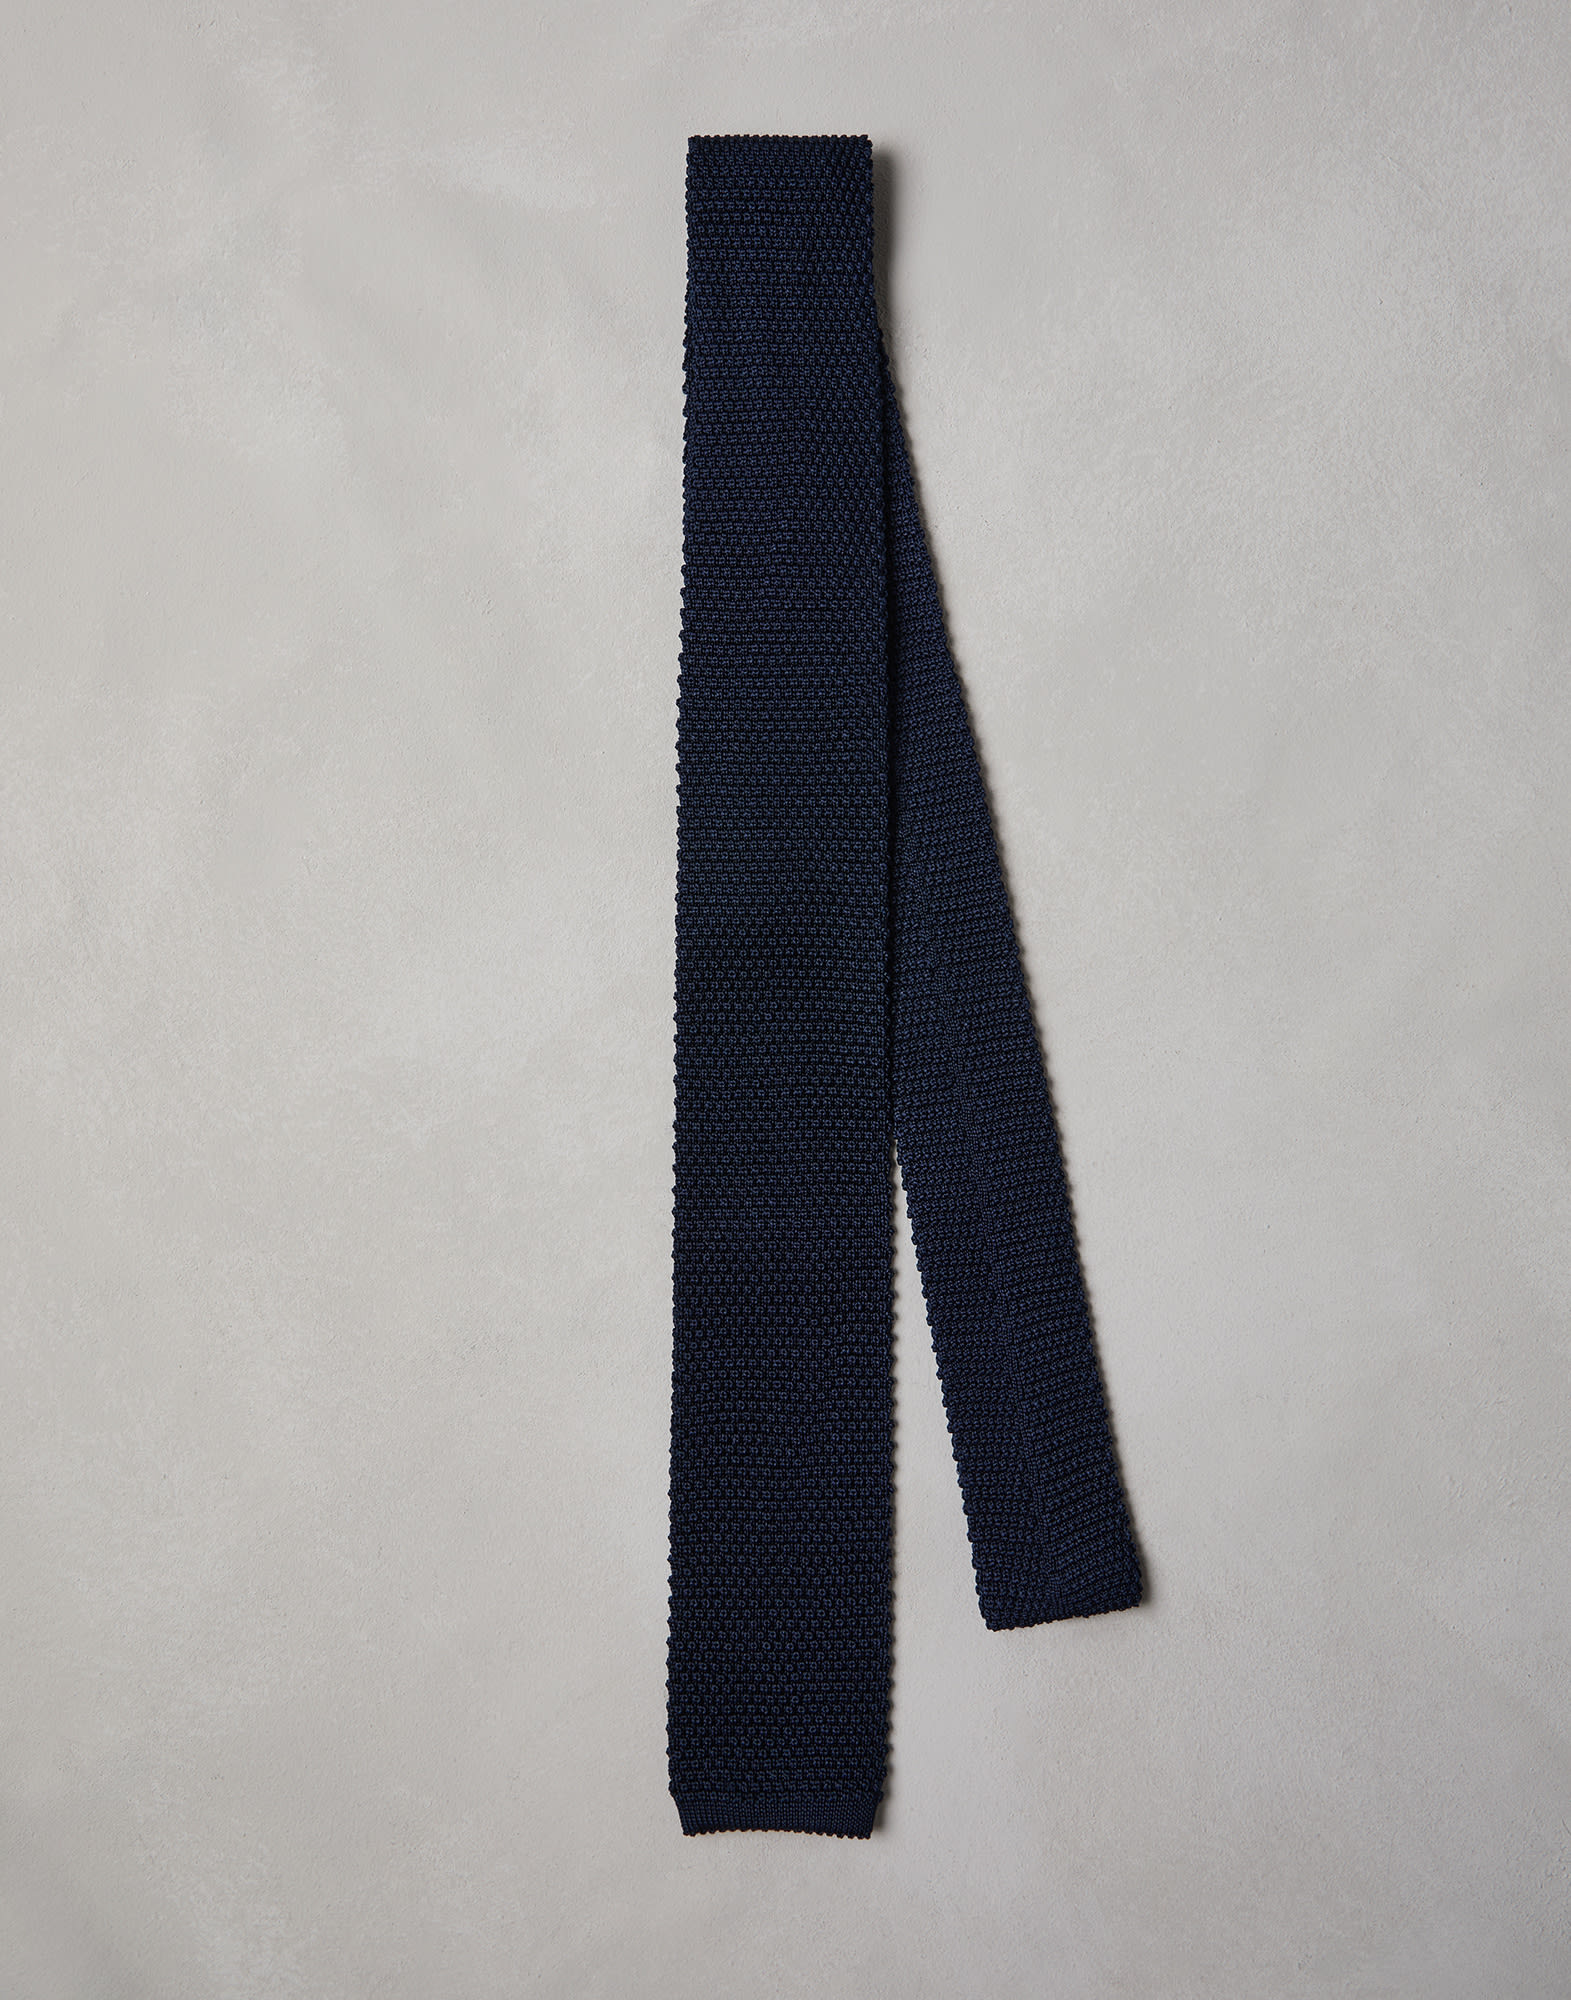 Knit necktie